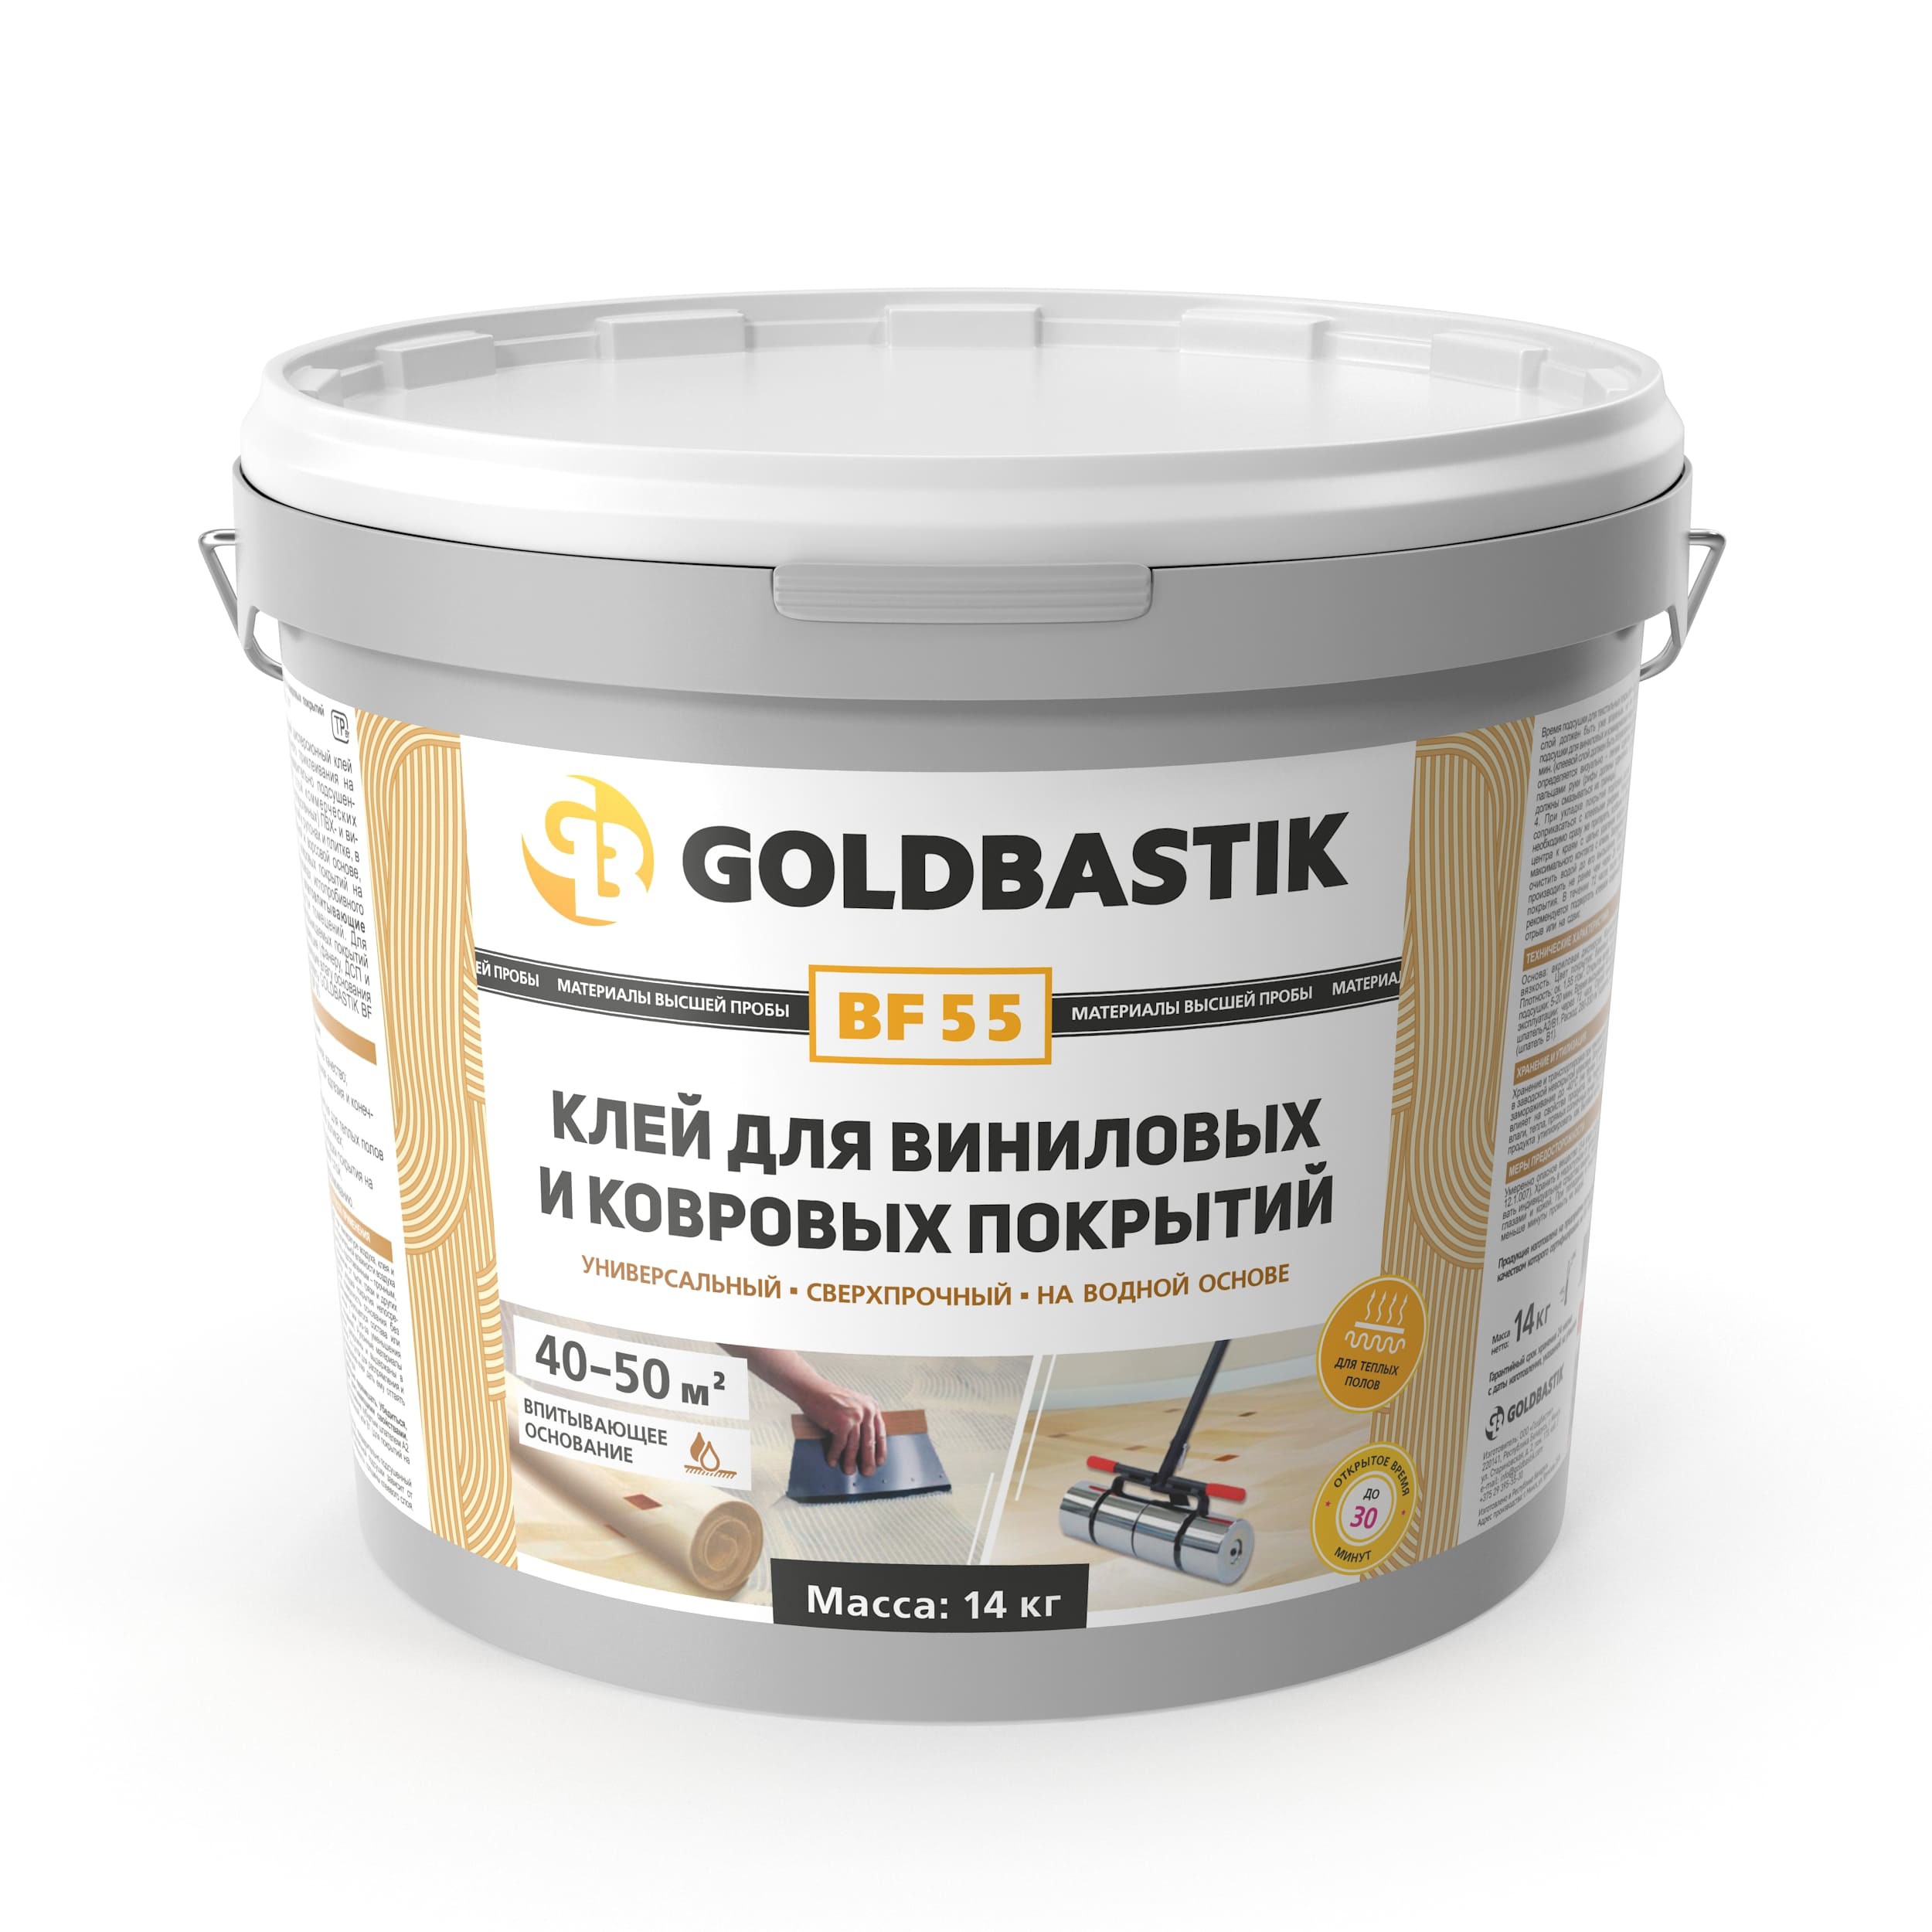 Клей для виниловых и ковровых покрытий GOLDBASTIK BF 55 (14 кг.) купить в Минске